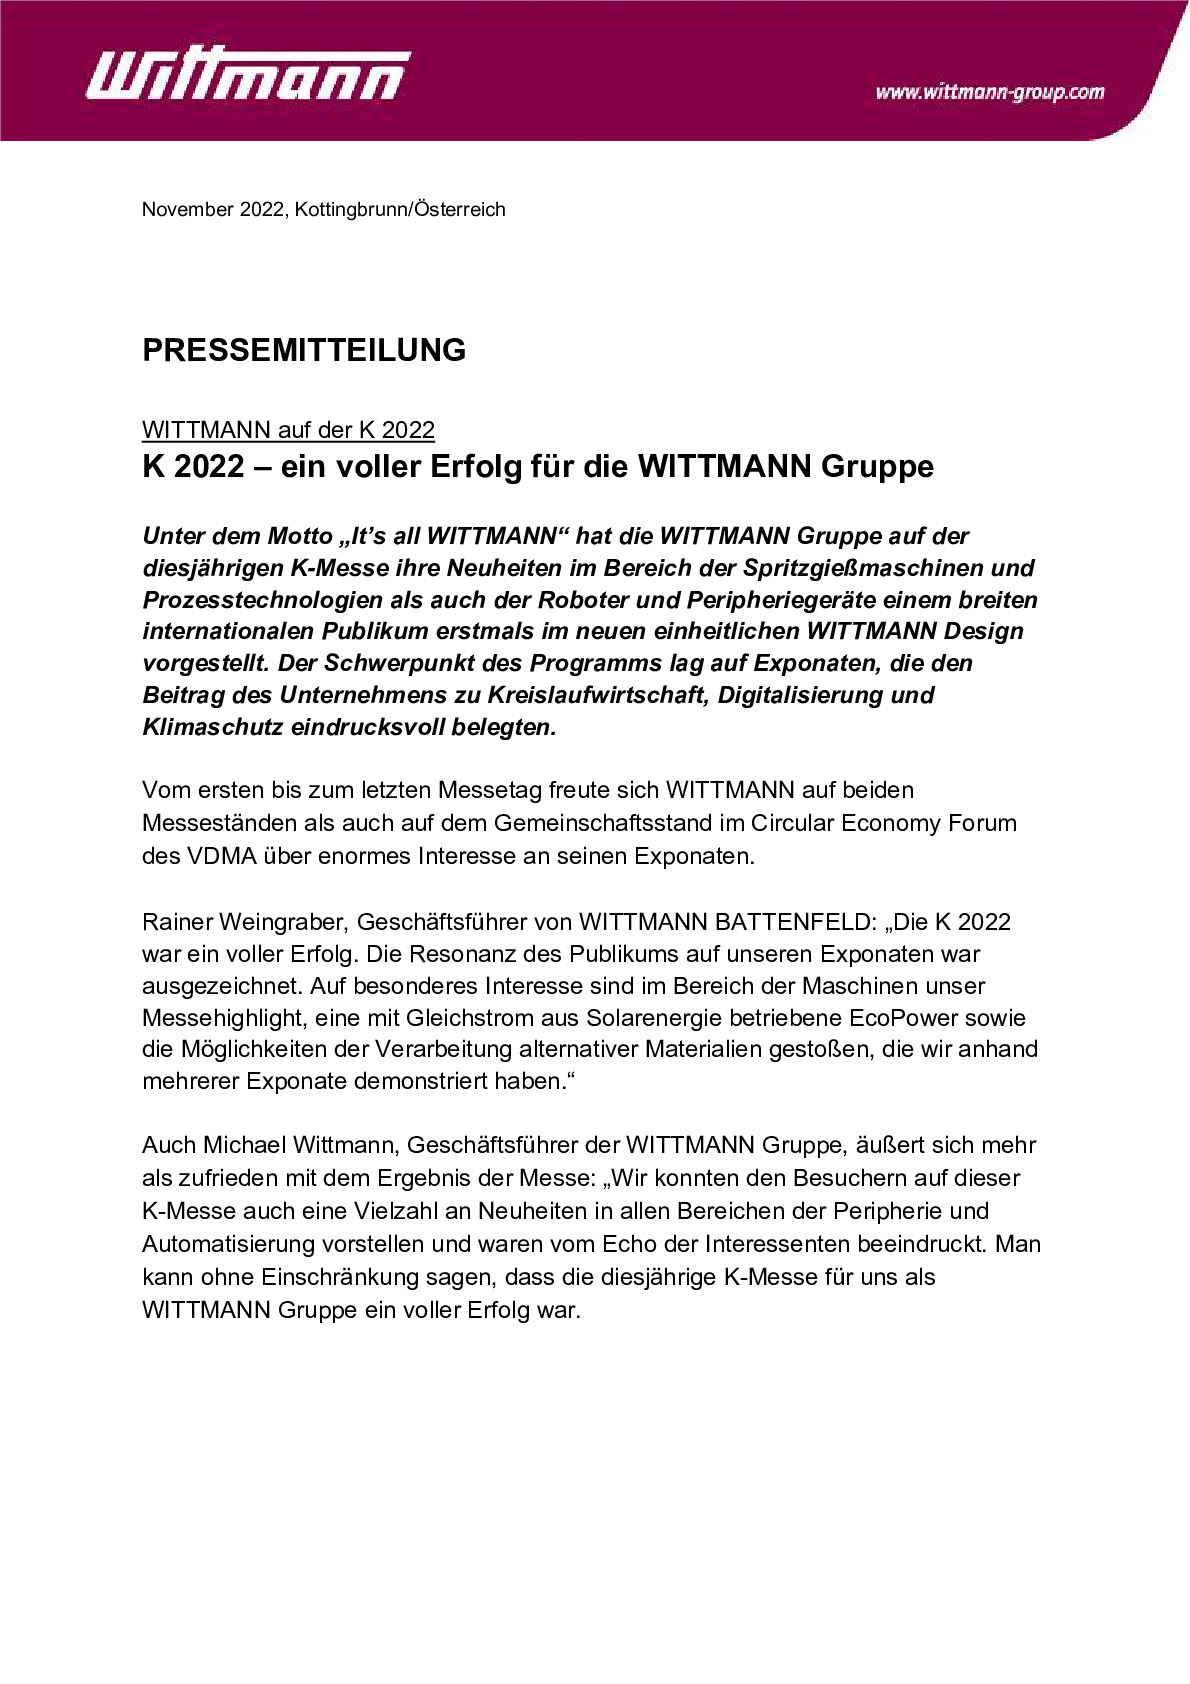 wiba-pm-21-2022_k2022-nachbericht_de